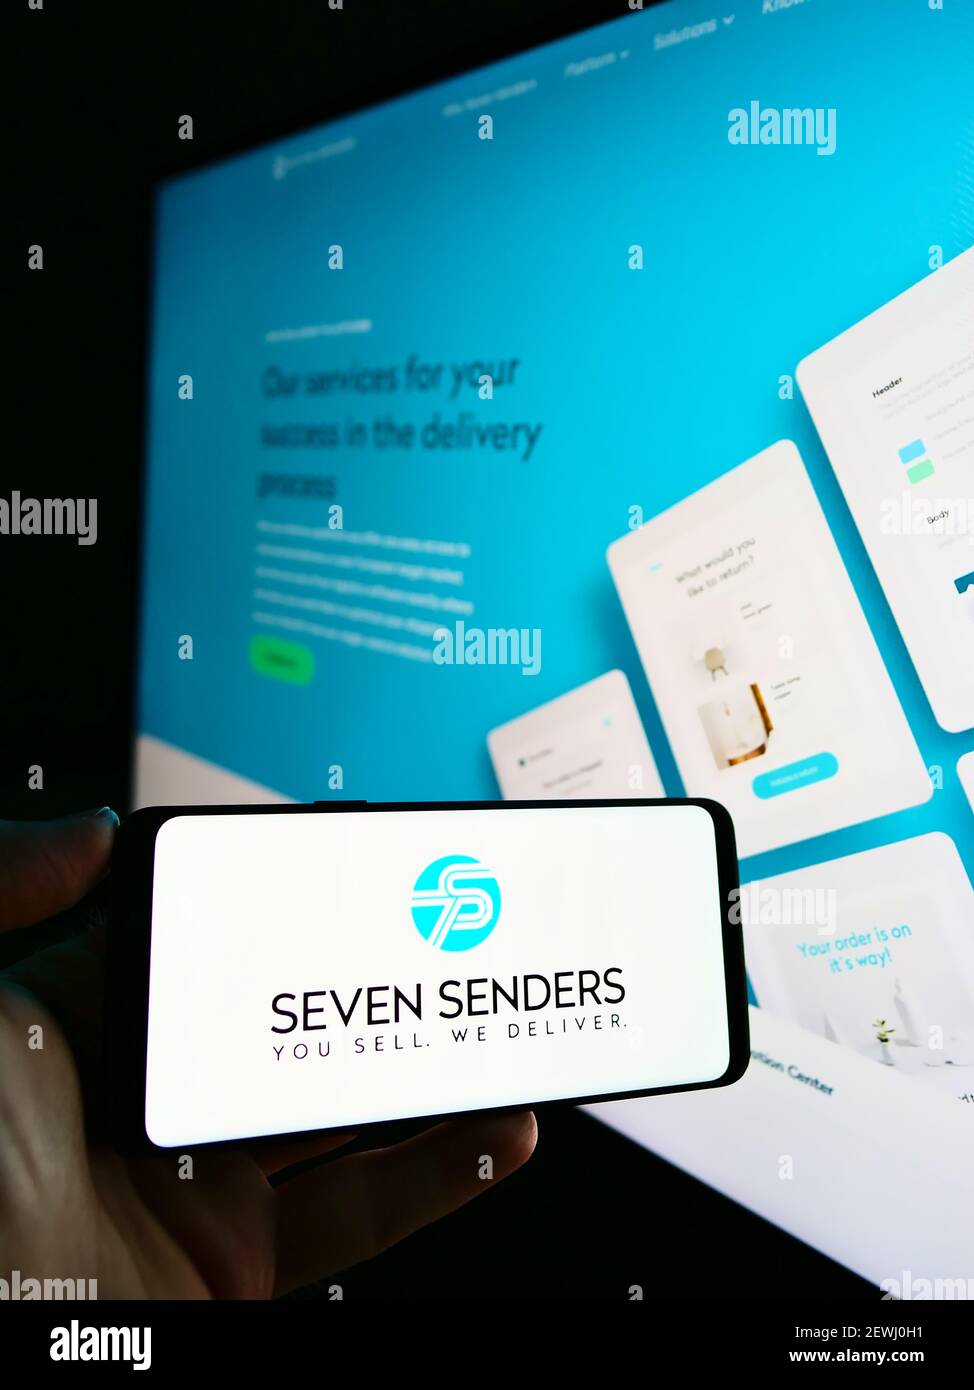 Personne tenant un smartphone avec le logo de la plate-forme de livraison allemande Seven Senders GmbH sur l'écran devant le site Web d'affaires. Mise au point sur l'affichage du téléphone. Banque D'Images